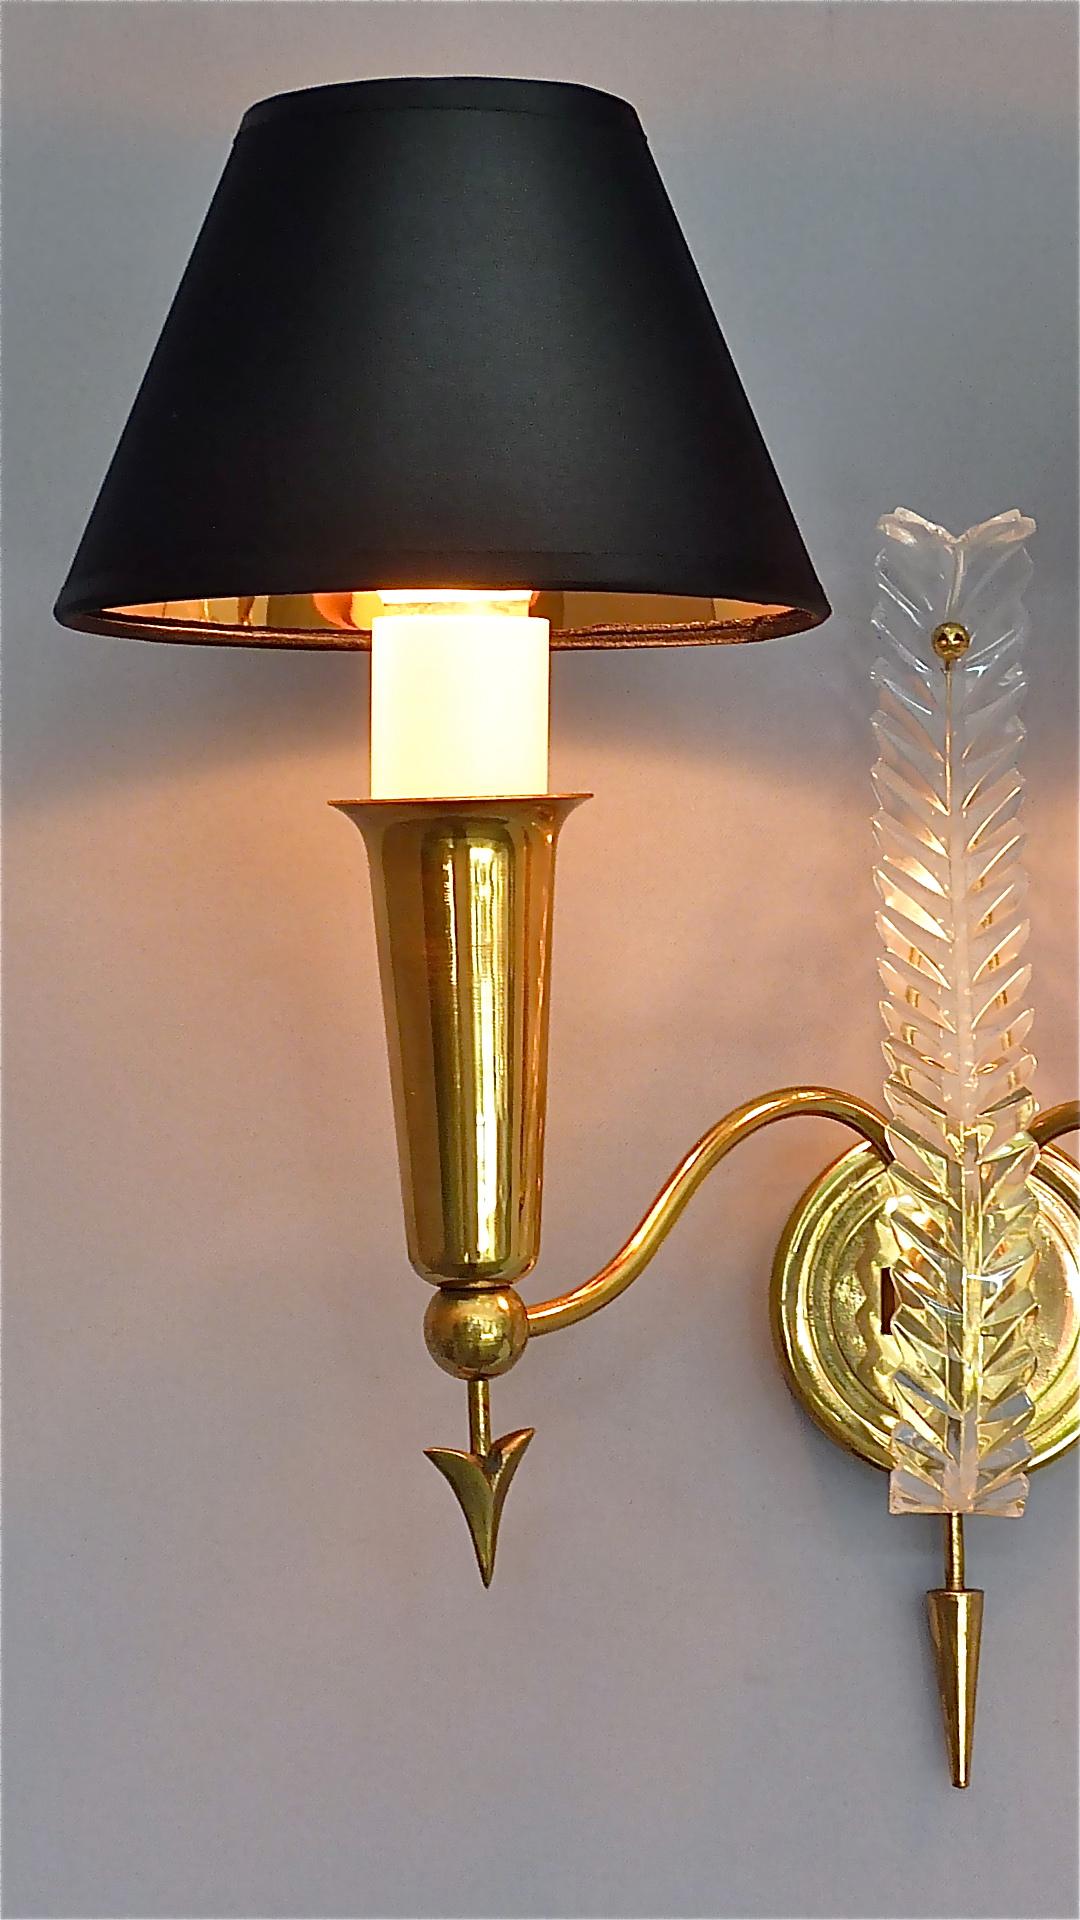 Patinated Pair of Maison Arlus Midcentury Sconces Jansen Arrow Brass Lamp, Gio Ponti Style